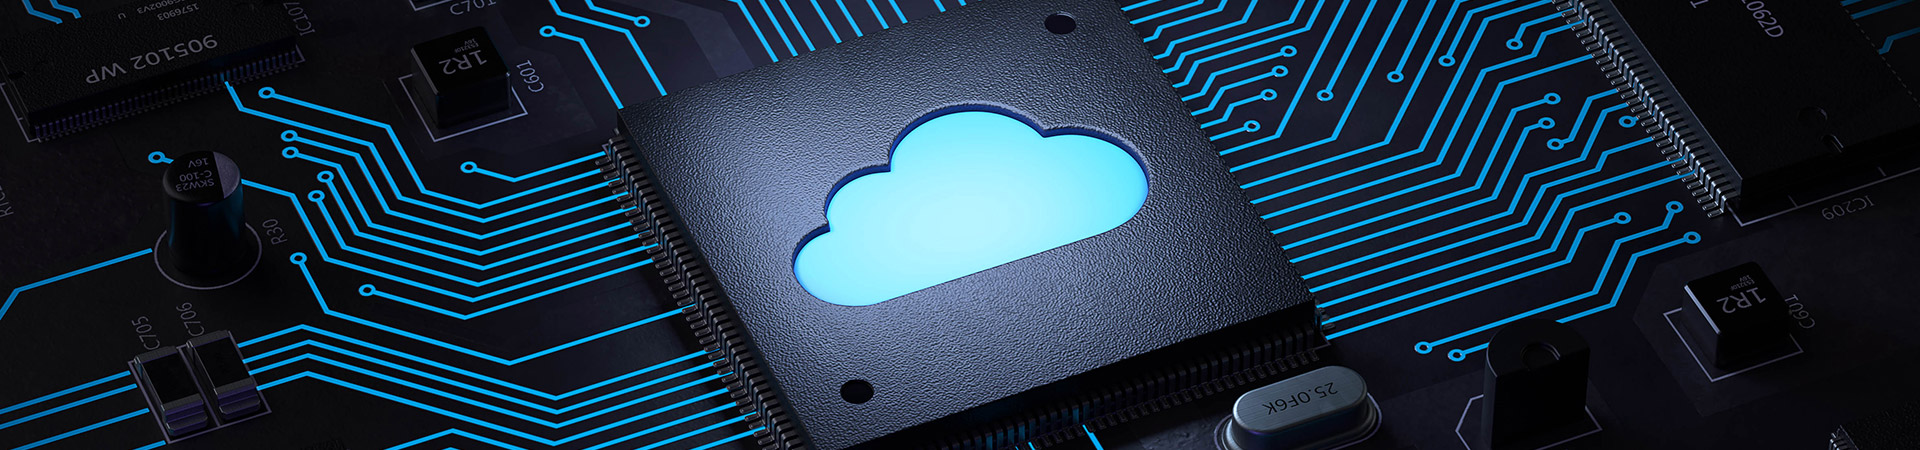 Hubspot Cloud Hero Image Desktop 1920x450